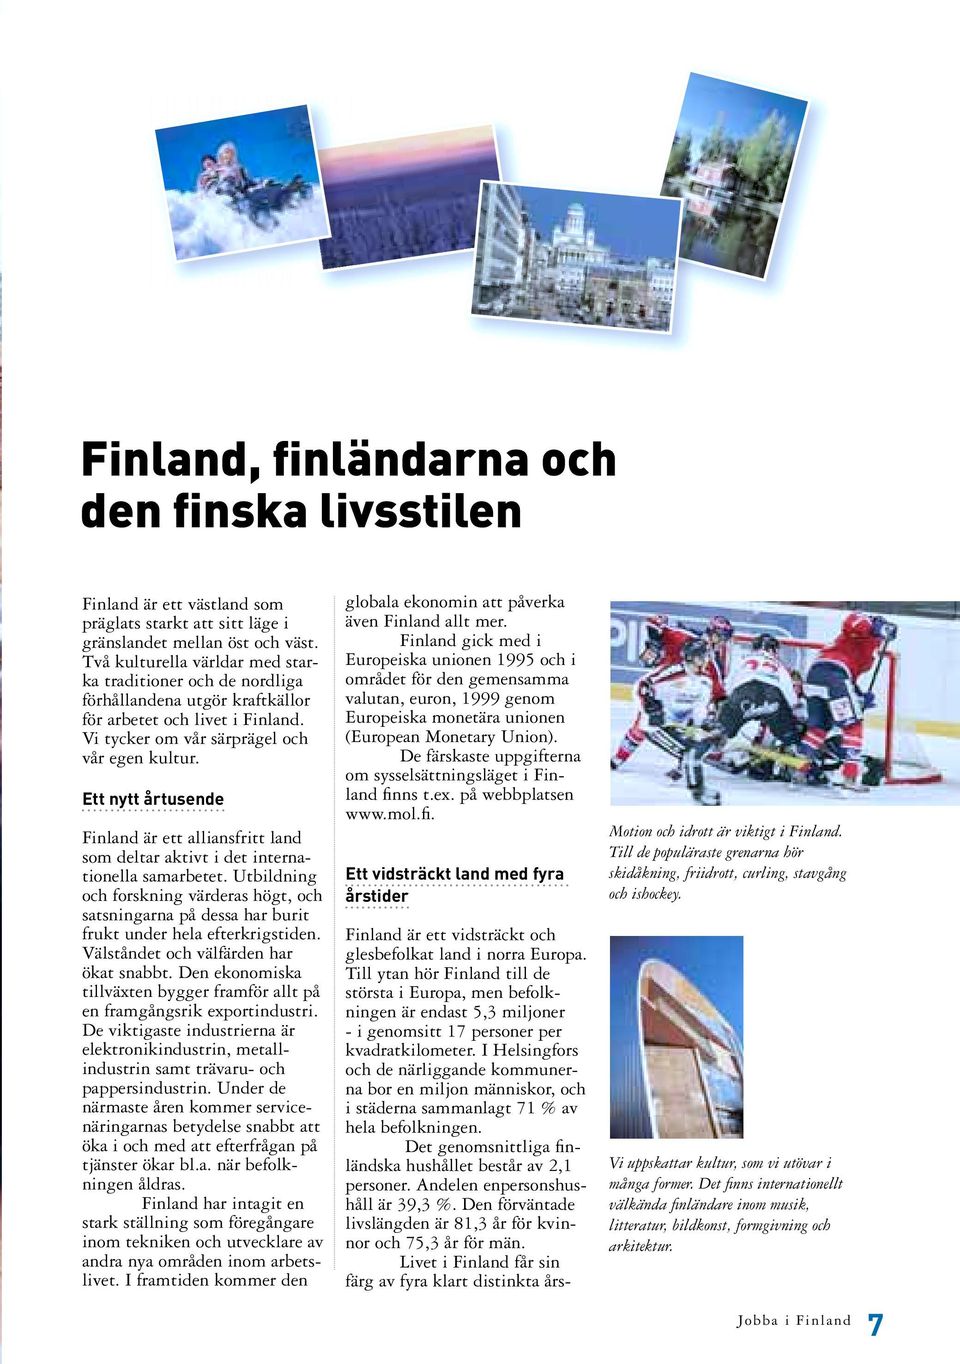 Ett nytt årtusende Finland är ett alliansfritt land som deltar aktivt i det internationella samarbetet.